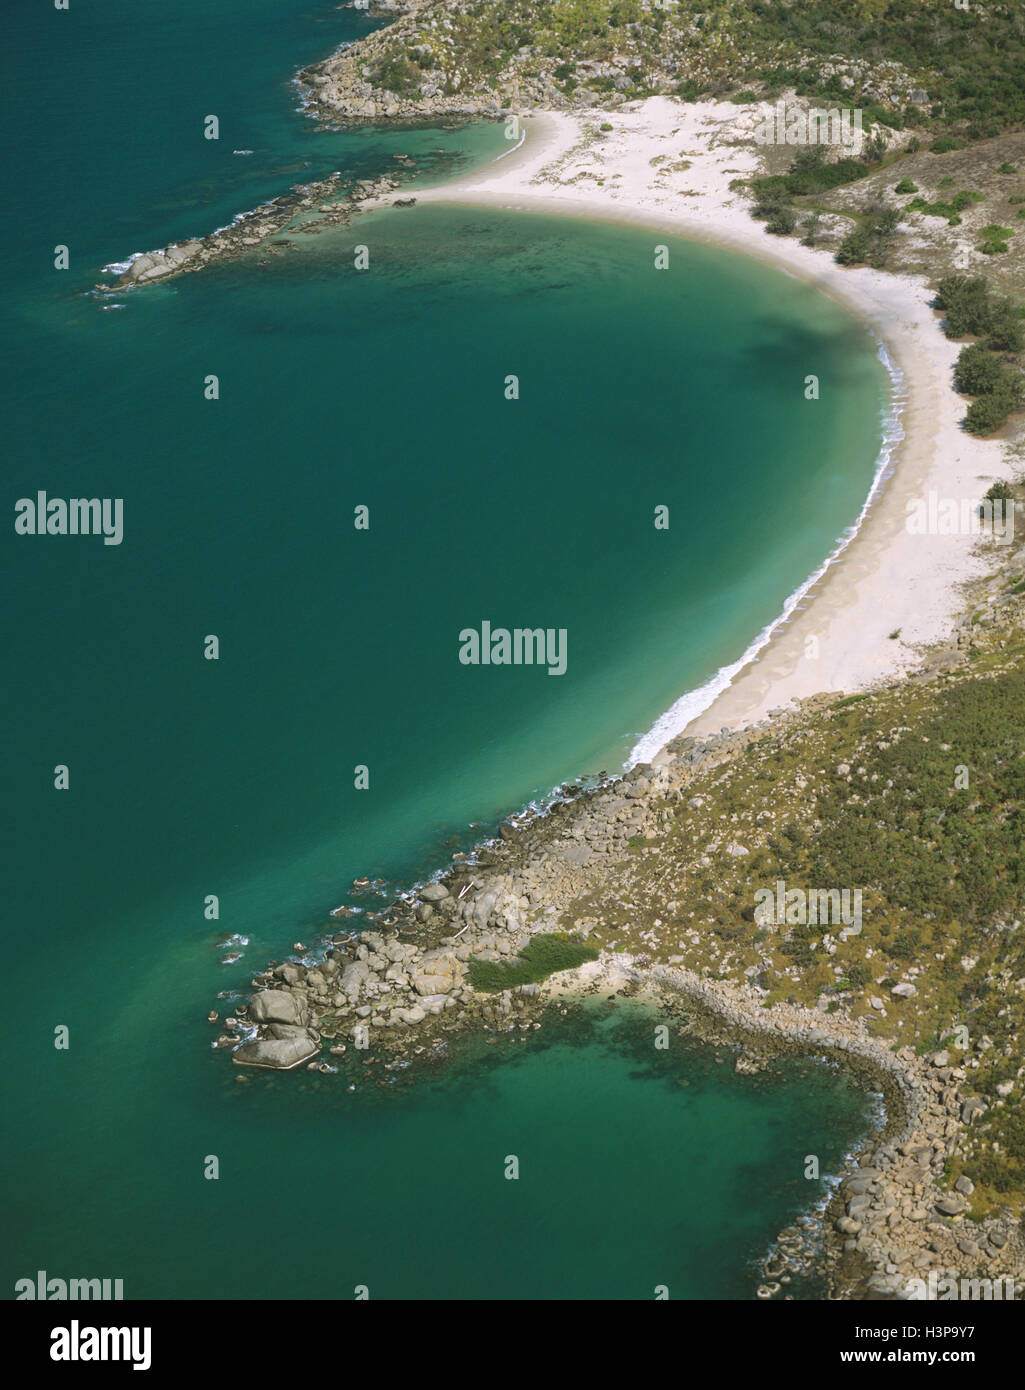 En la costa de la Bahía de Melville, fotografía aérea. Foto de stock